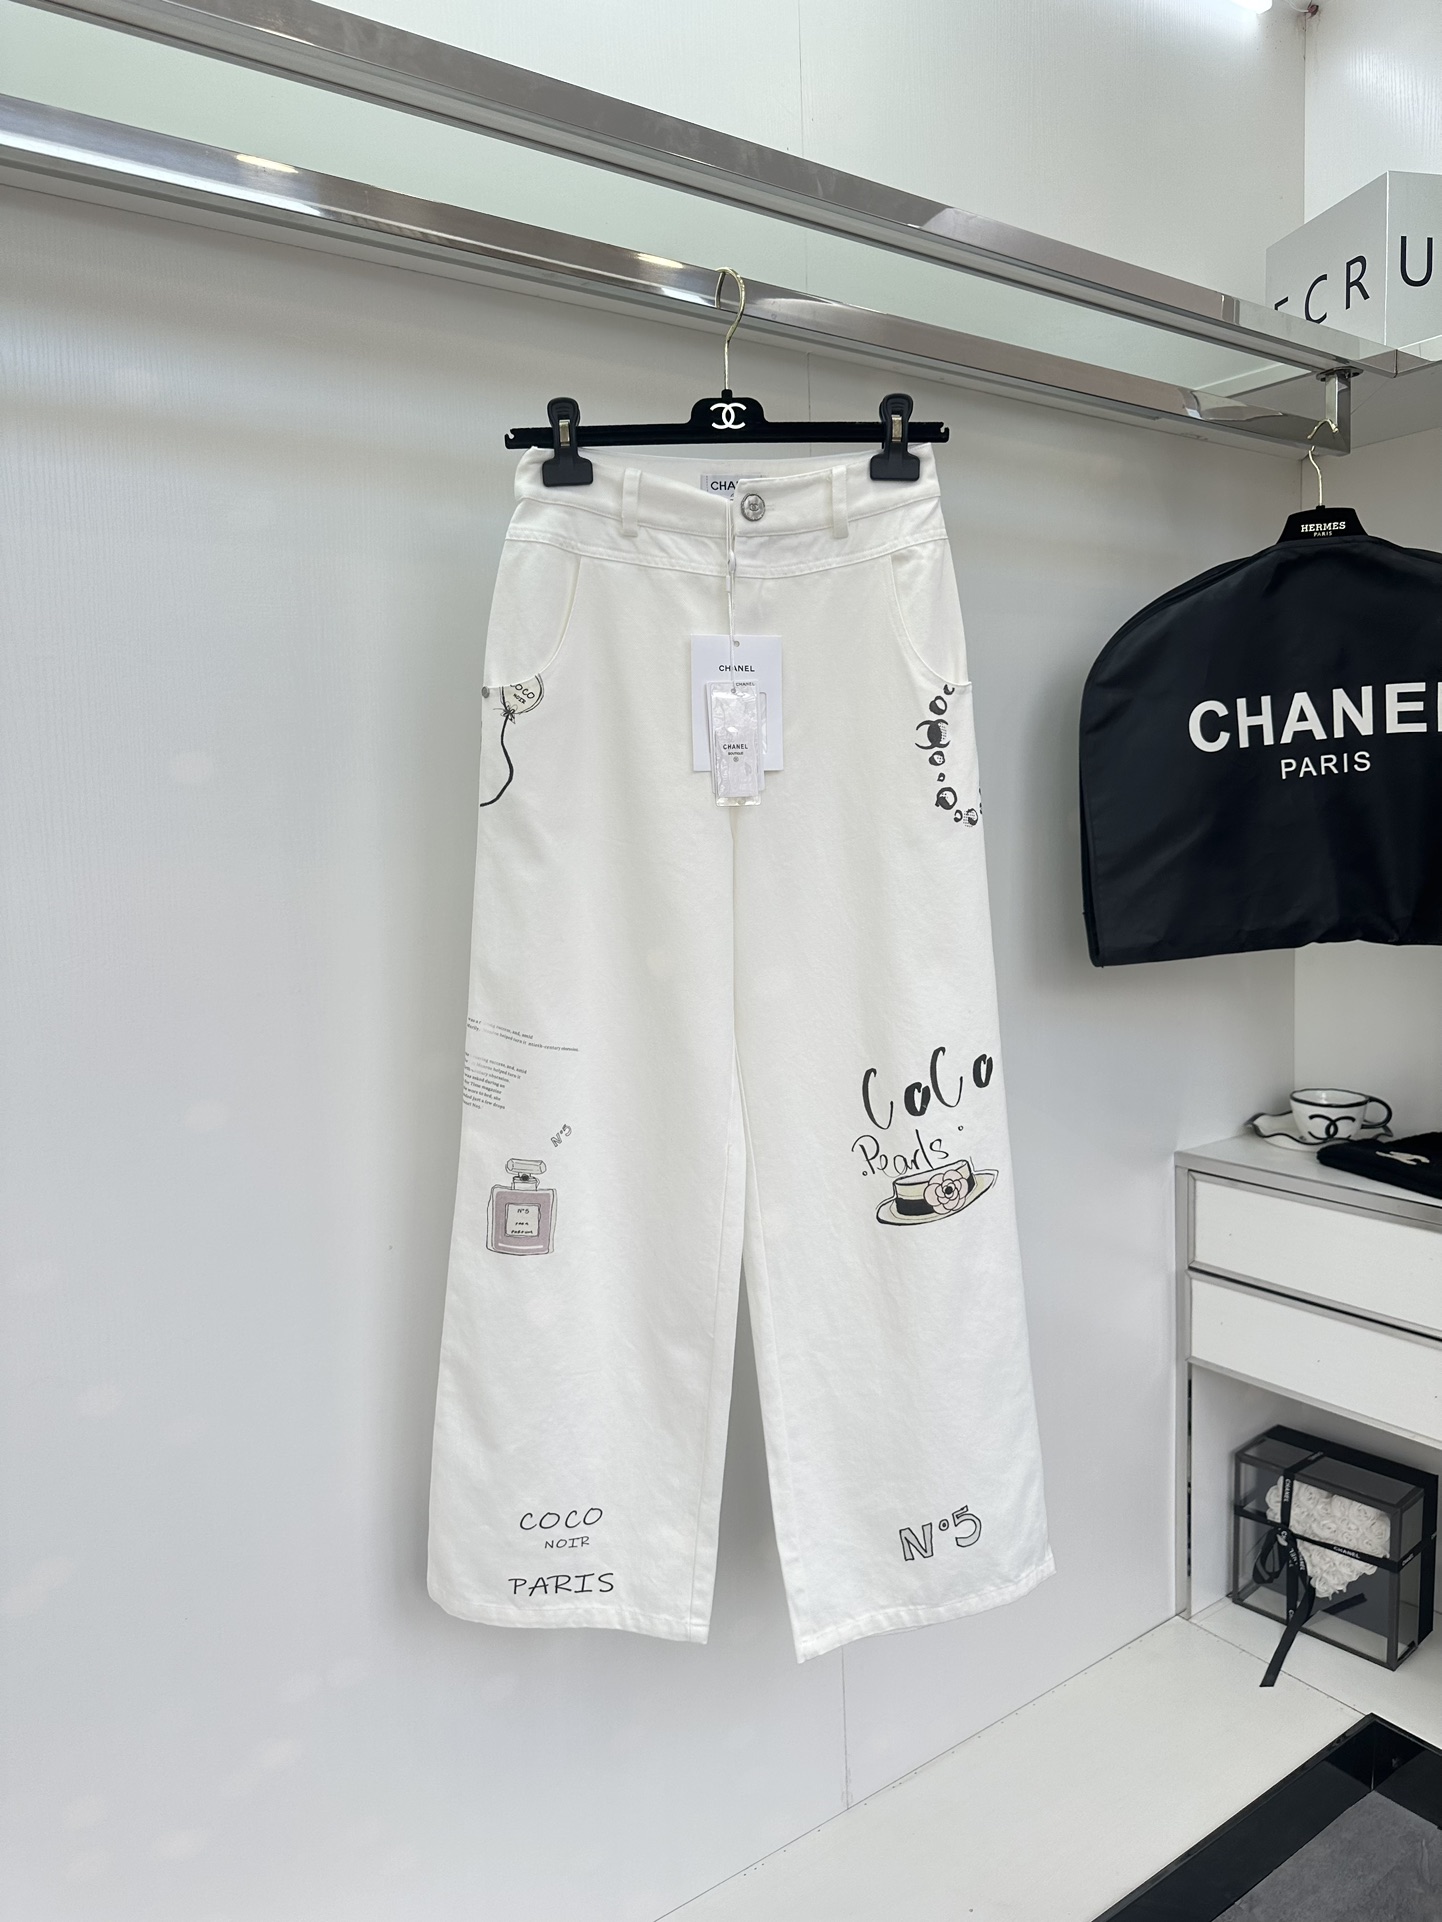 Chanel Ropa Pantalones Blanco Algodón bruto azul Piernas anchas